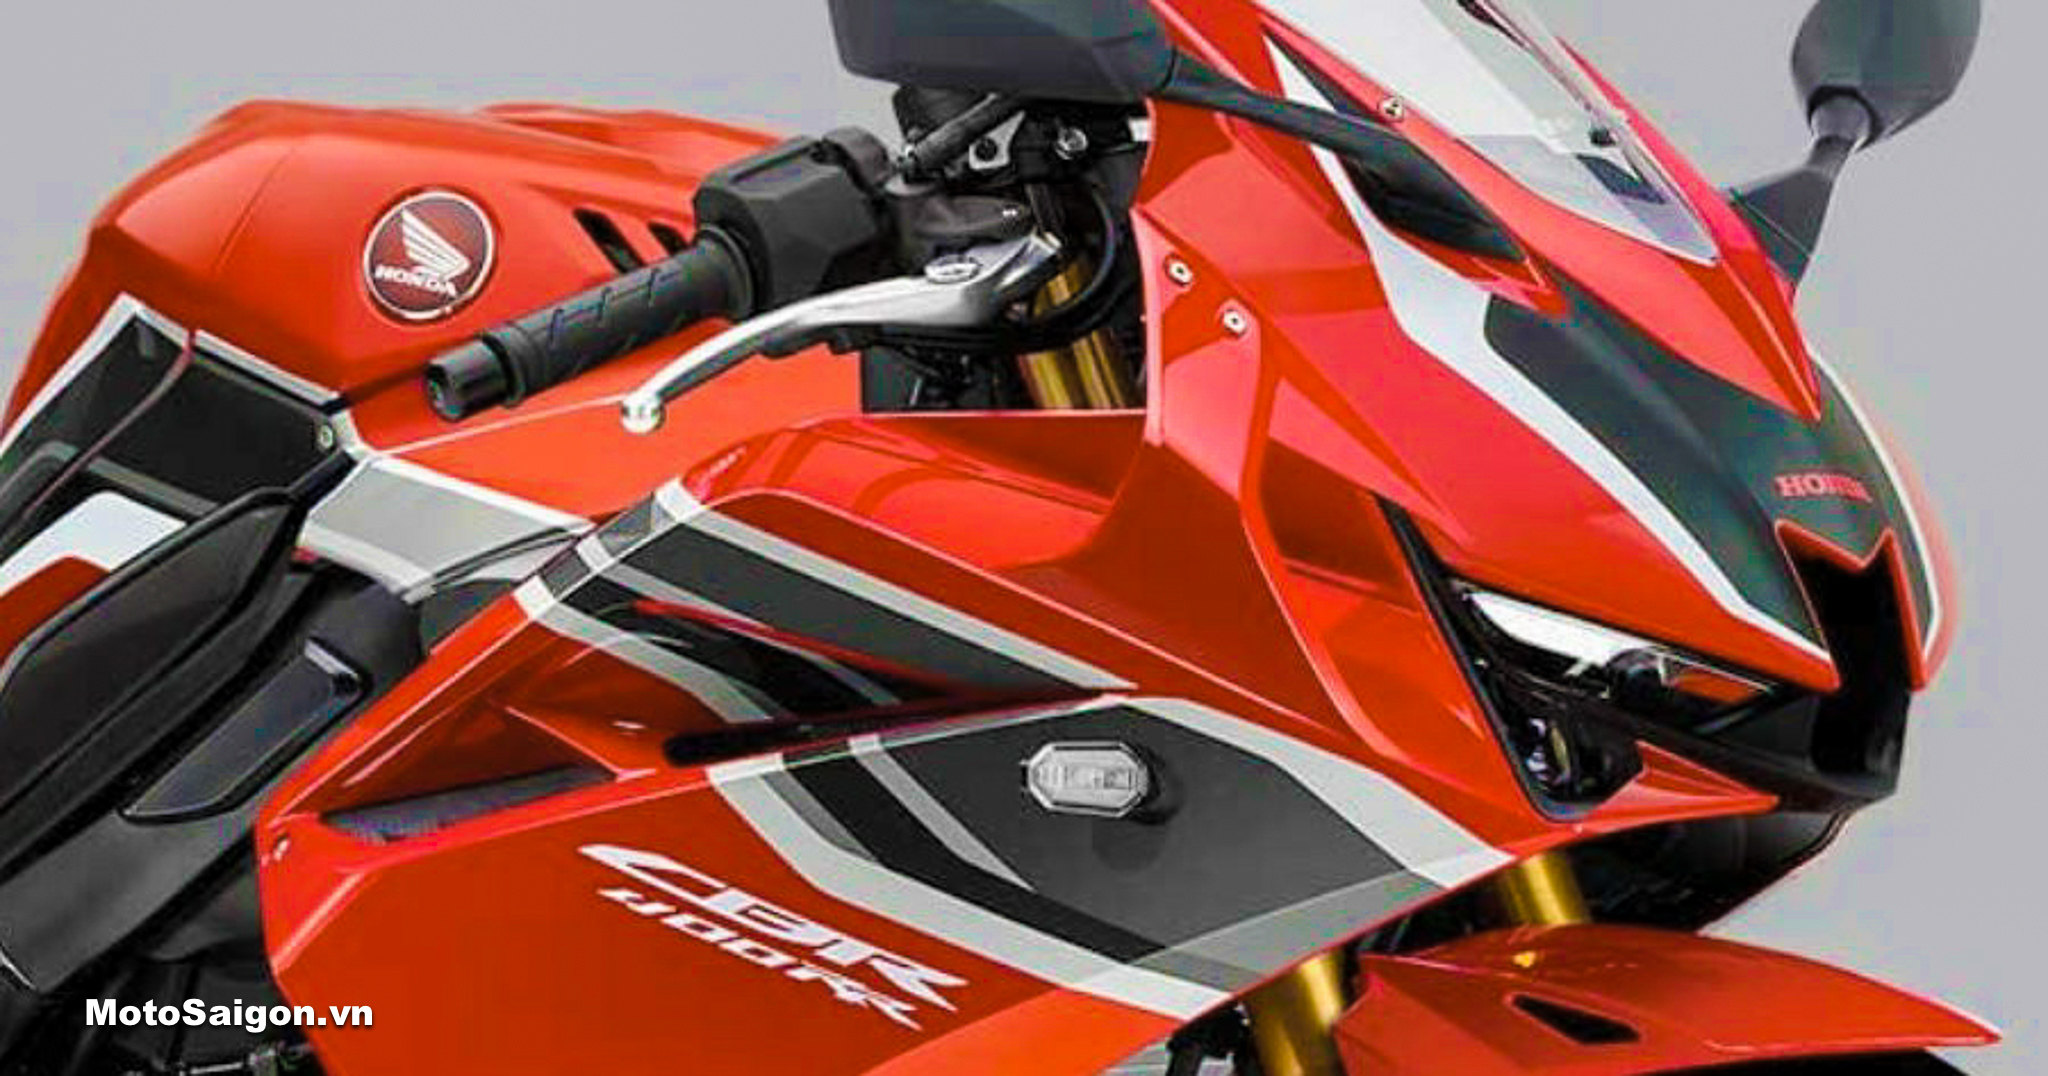 Honda CBR400RR 2022 trang bị động cơ 4 xilanh của CB400F lộ hình ảnh